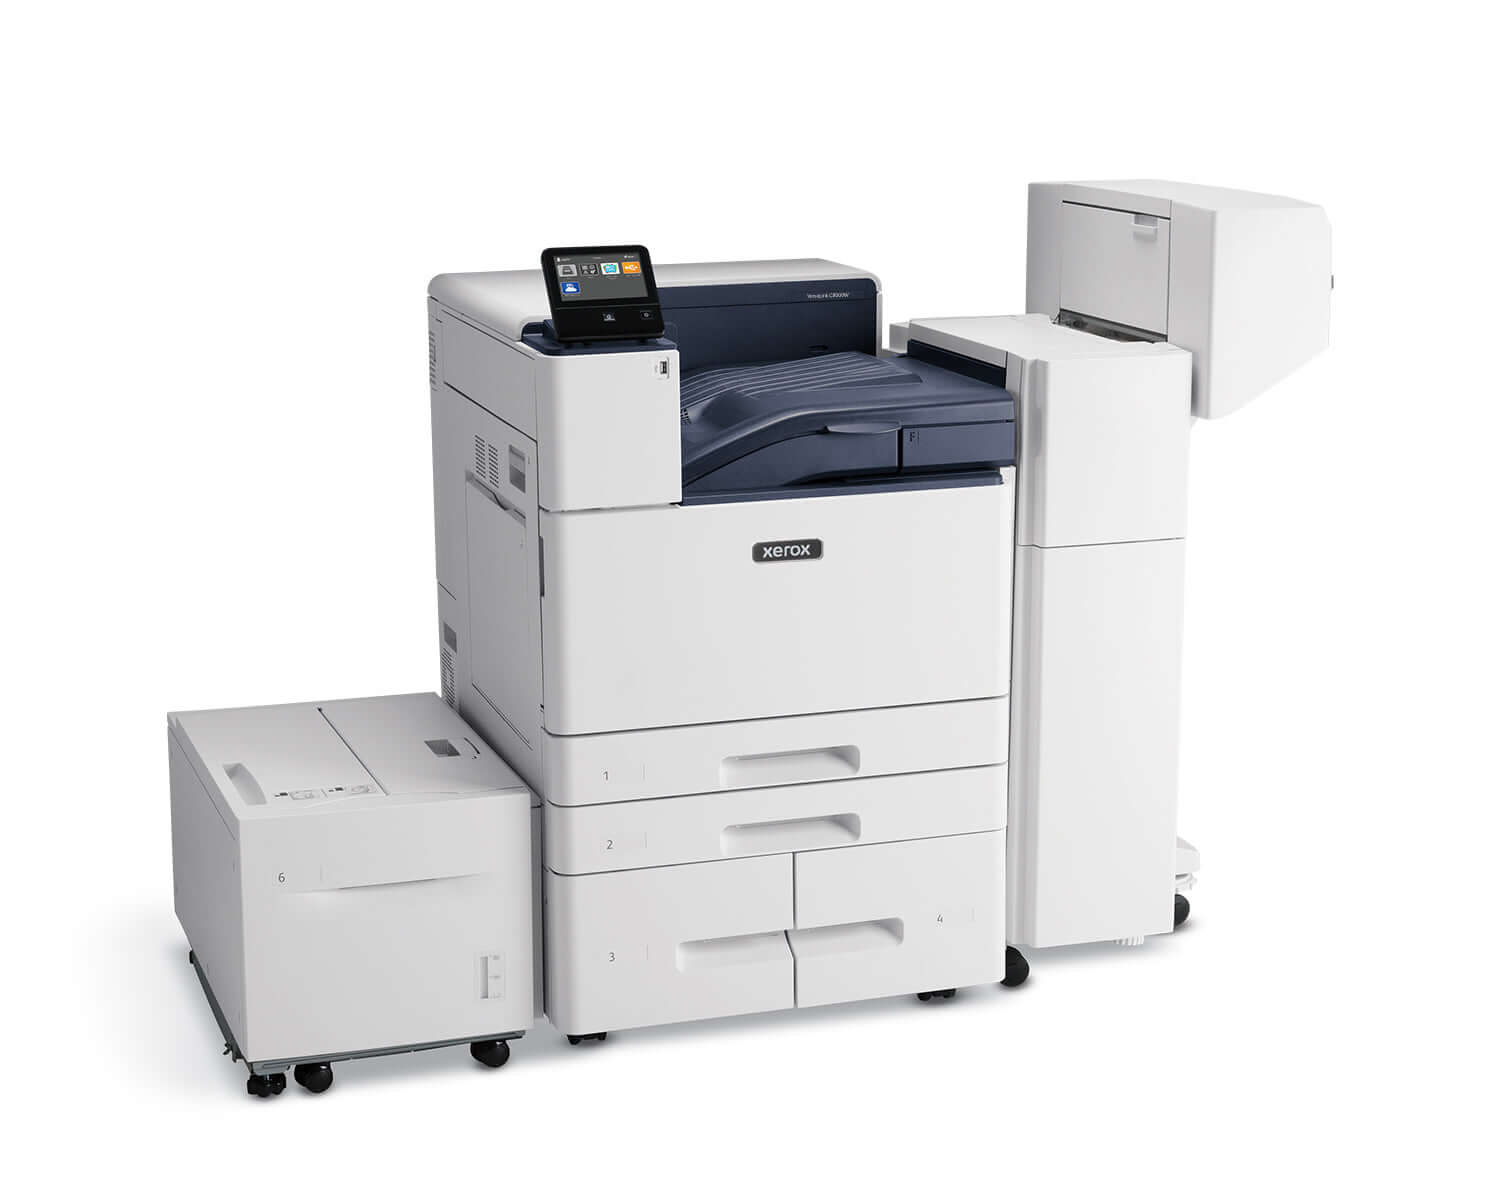 Xerox VersaLink C8000W/DT White toner A3 laser printer